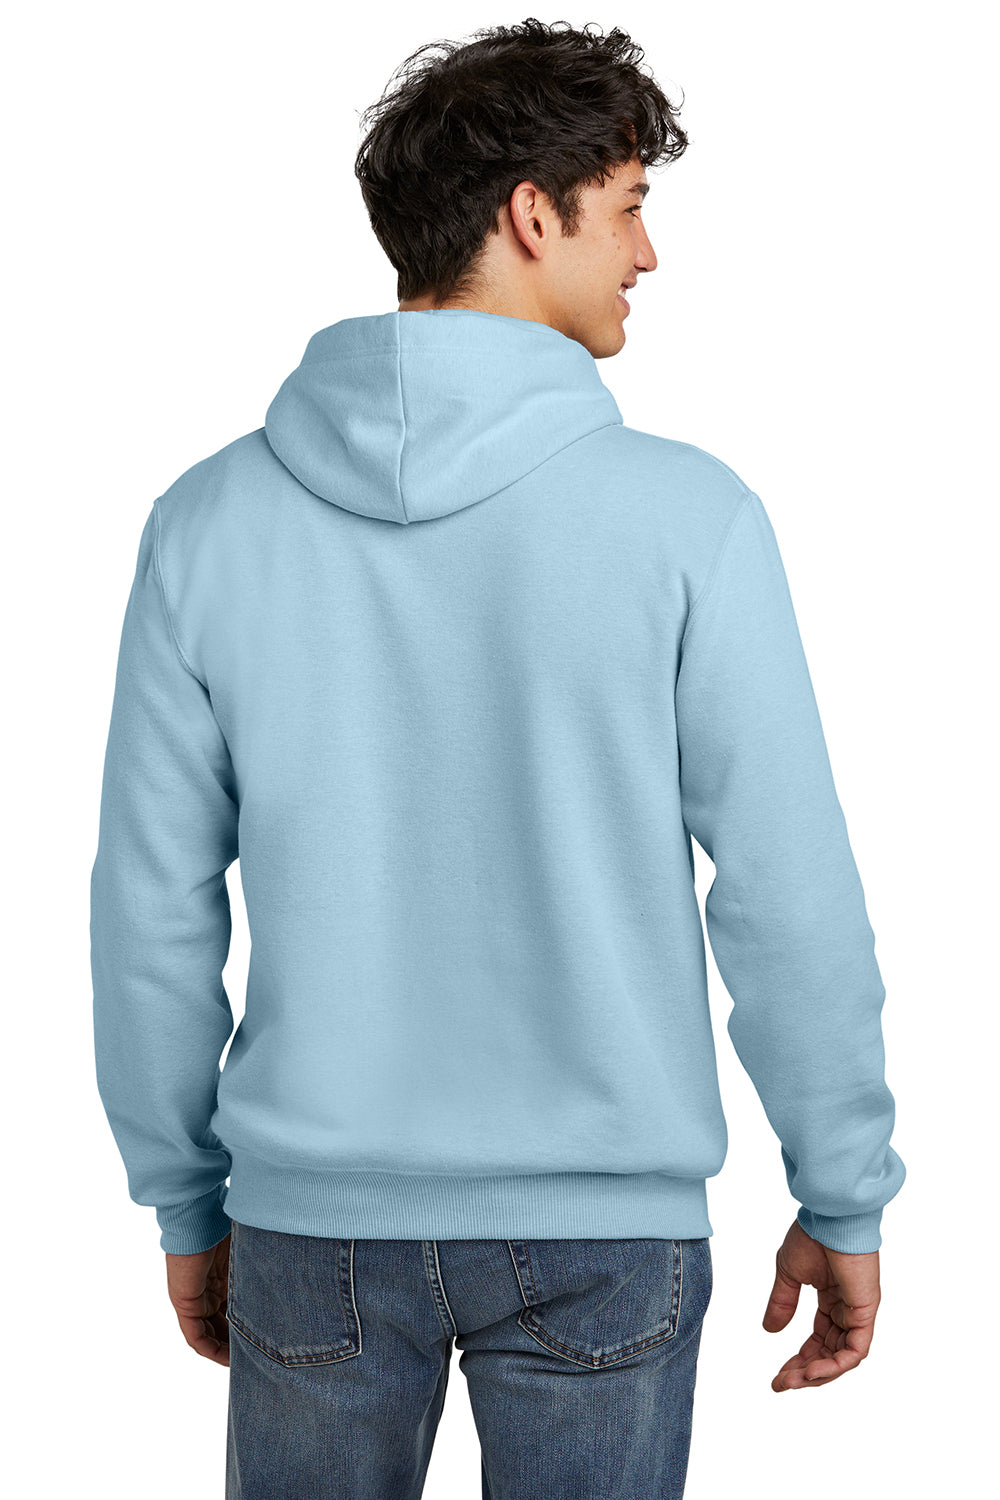 Jerzees 700M Mens Eco Premium Hooded Sweatshirt Hoodie Heather Cloud Blue Back